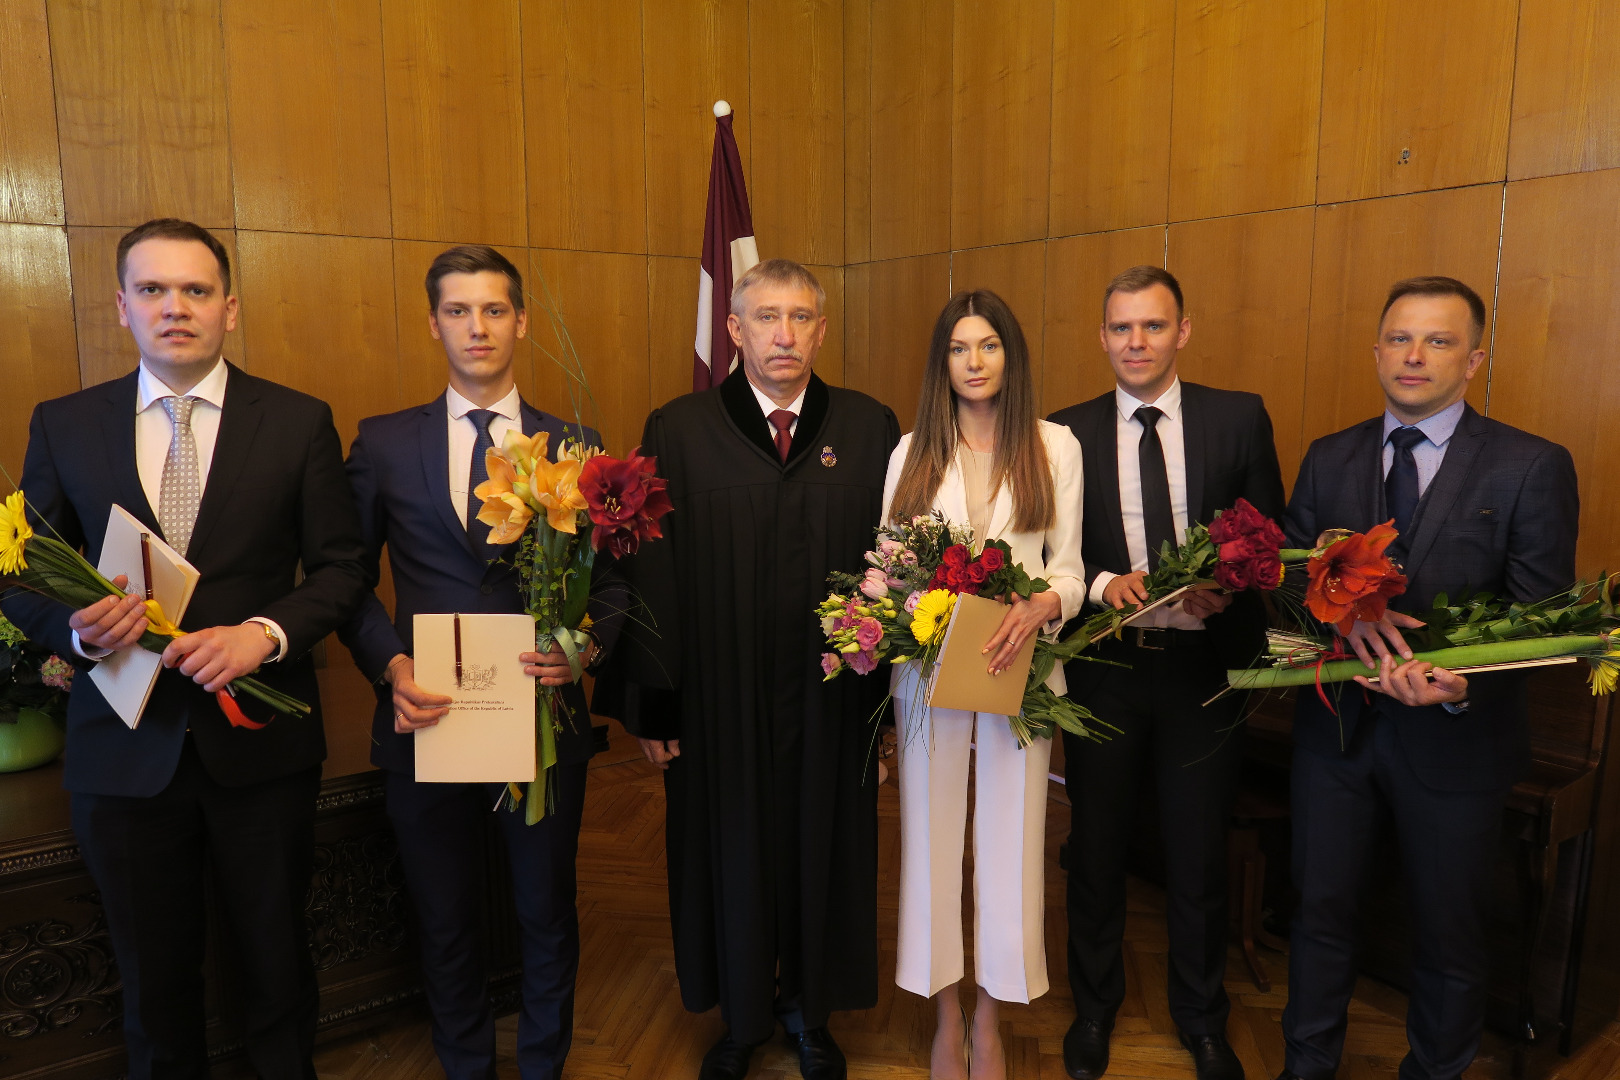 Ģenerālprokurors Ēriks Kalnmeiers pieņem jauno prokuroru zvērestus 2018.gada 24.aprīlī